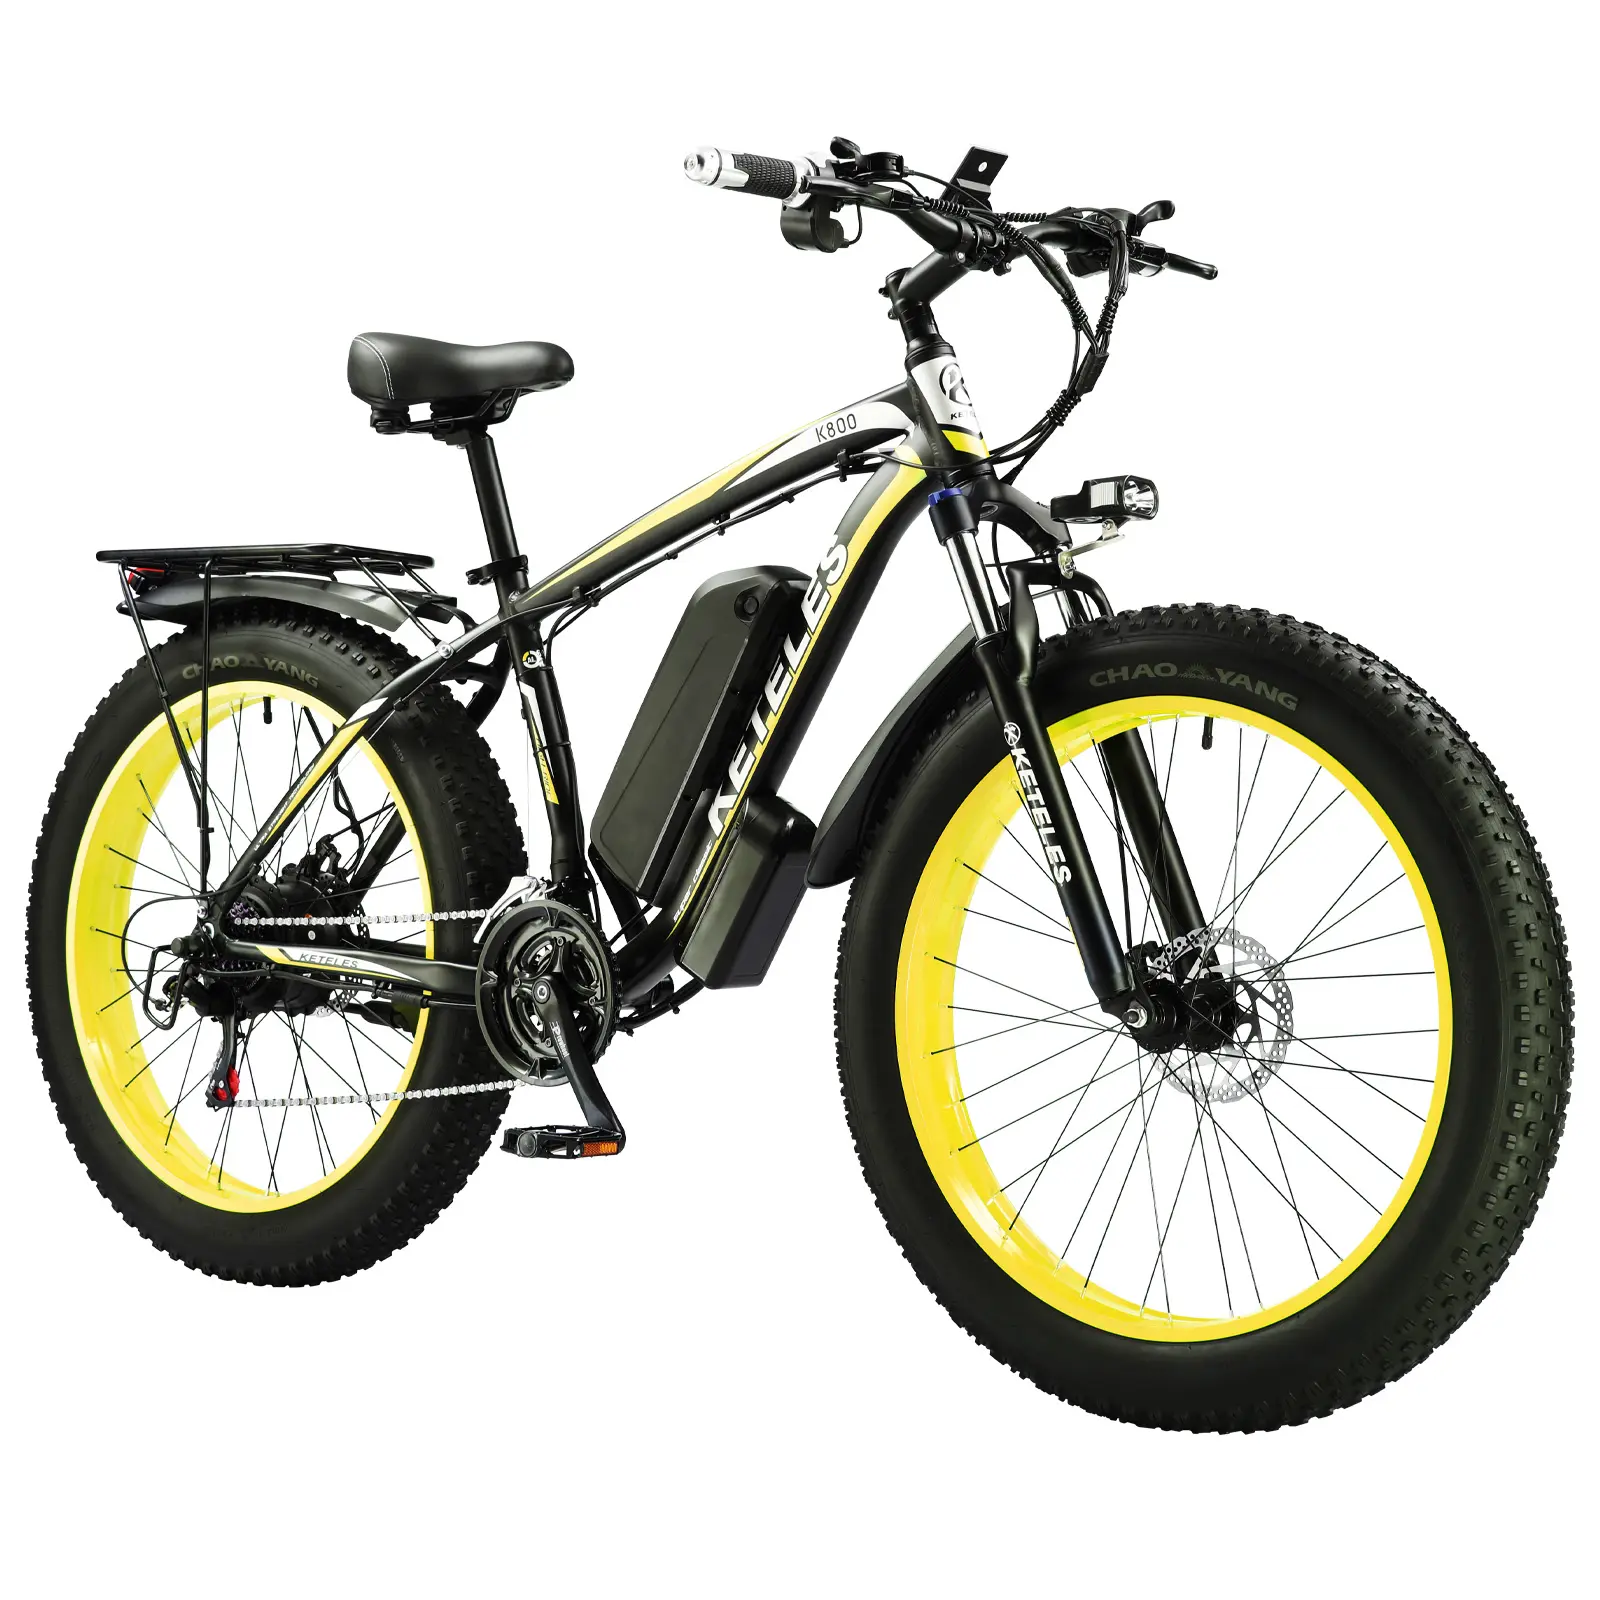 Spedizione gratuita per magazzino consegna rapida bici elettrica con motore 1000W 13AH batteria Fat Ebike 26 pollici grasso pneumatico bici elettrica